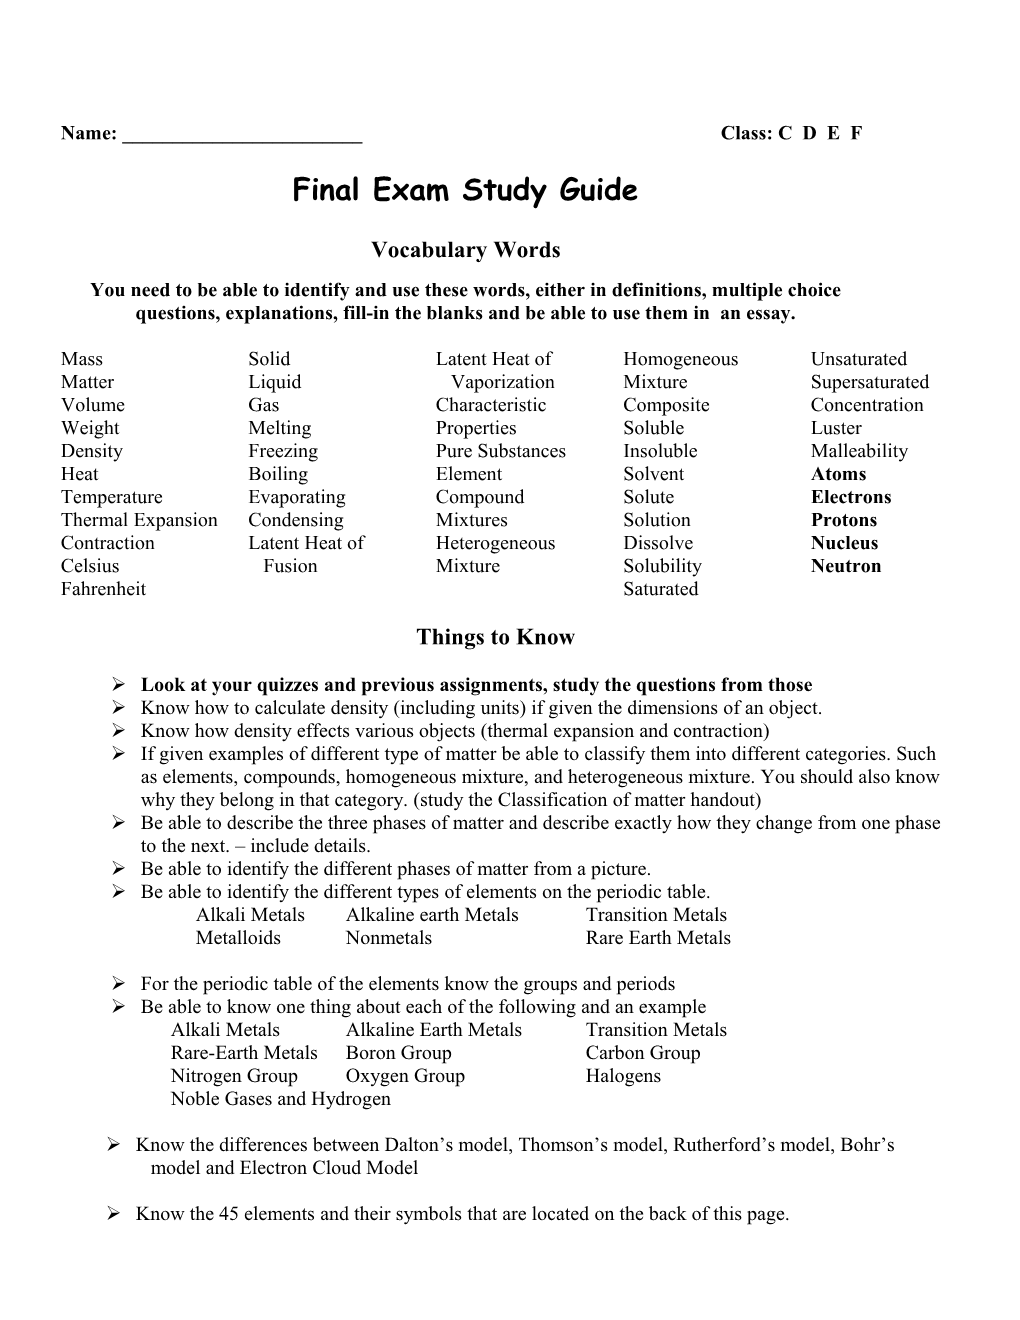 Final Exam Study Guide s6